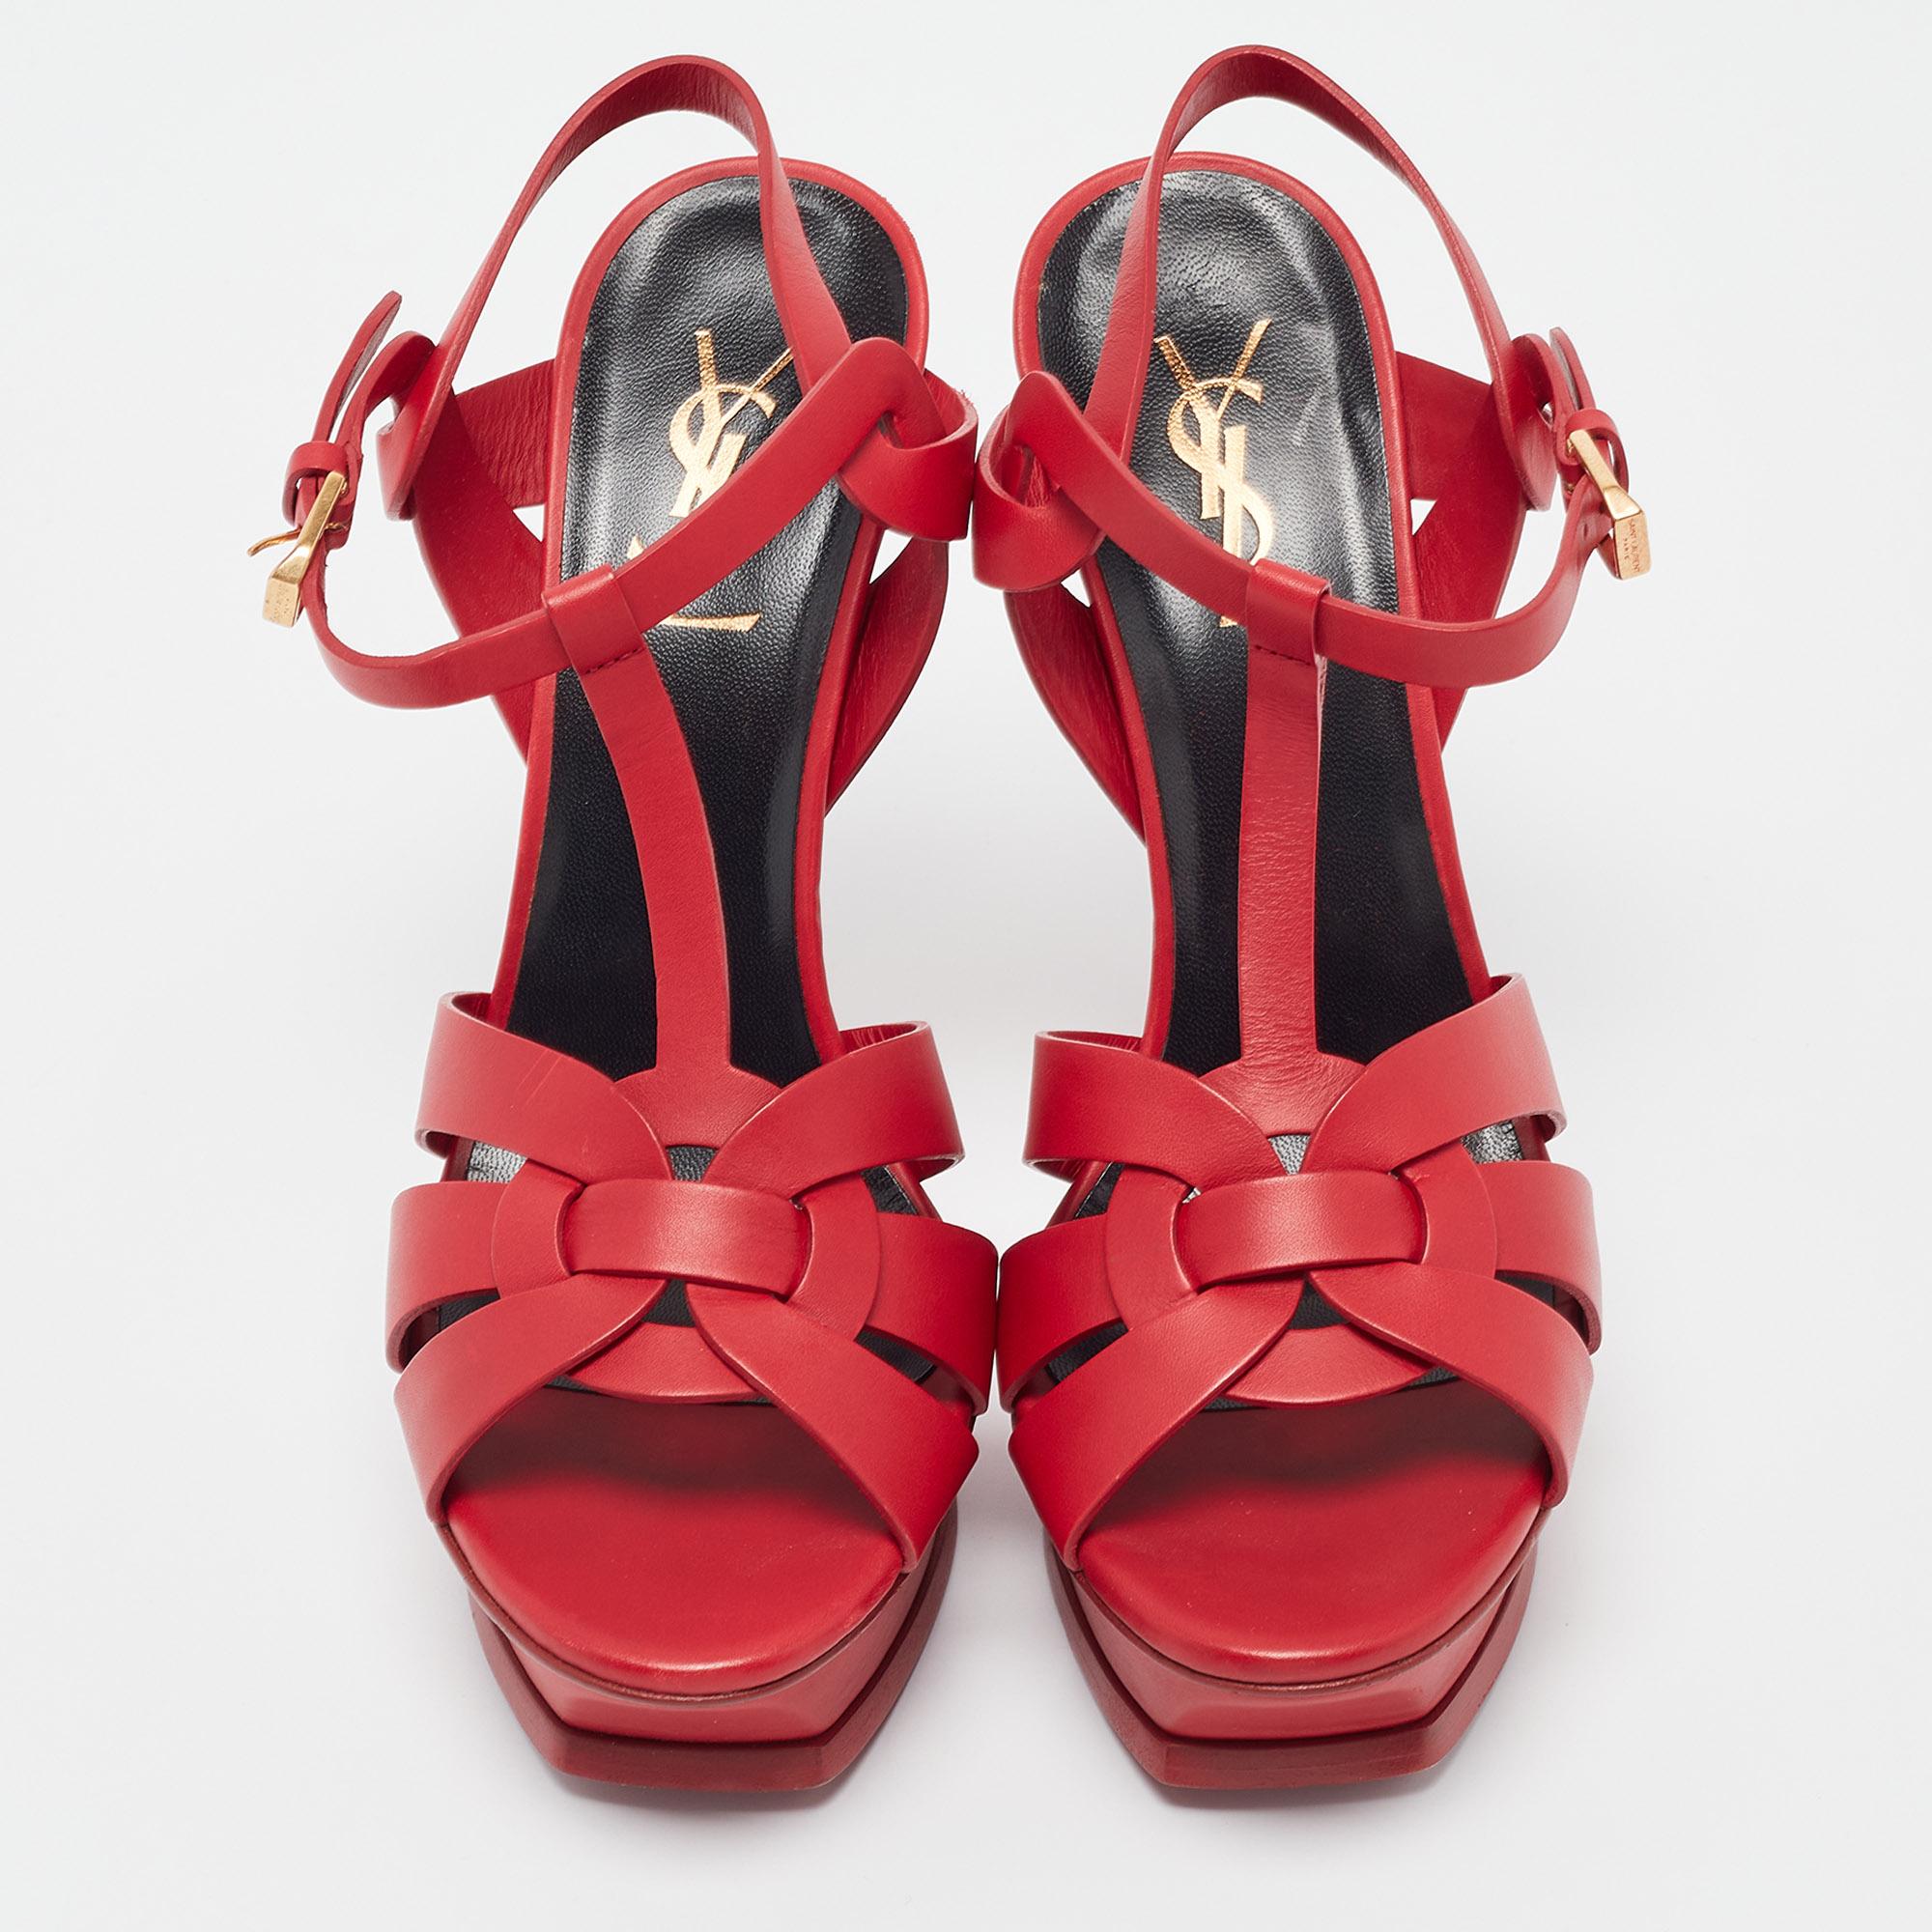 Ces sandales à plateforme Saint Laurent témoignent d'une esthétique intemporelle et d'un savoir-faire artisanal hors pair. De leur construction entrelacée à base de cuir aux talons robustes soutenus par des plateformes, ces sandales Tribute de